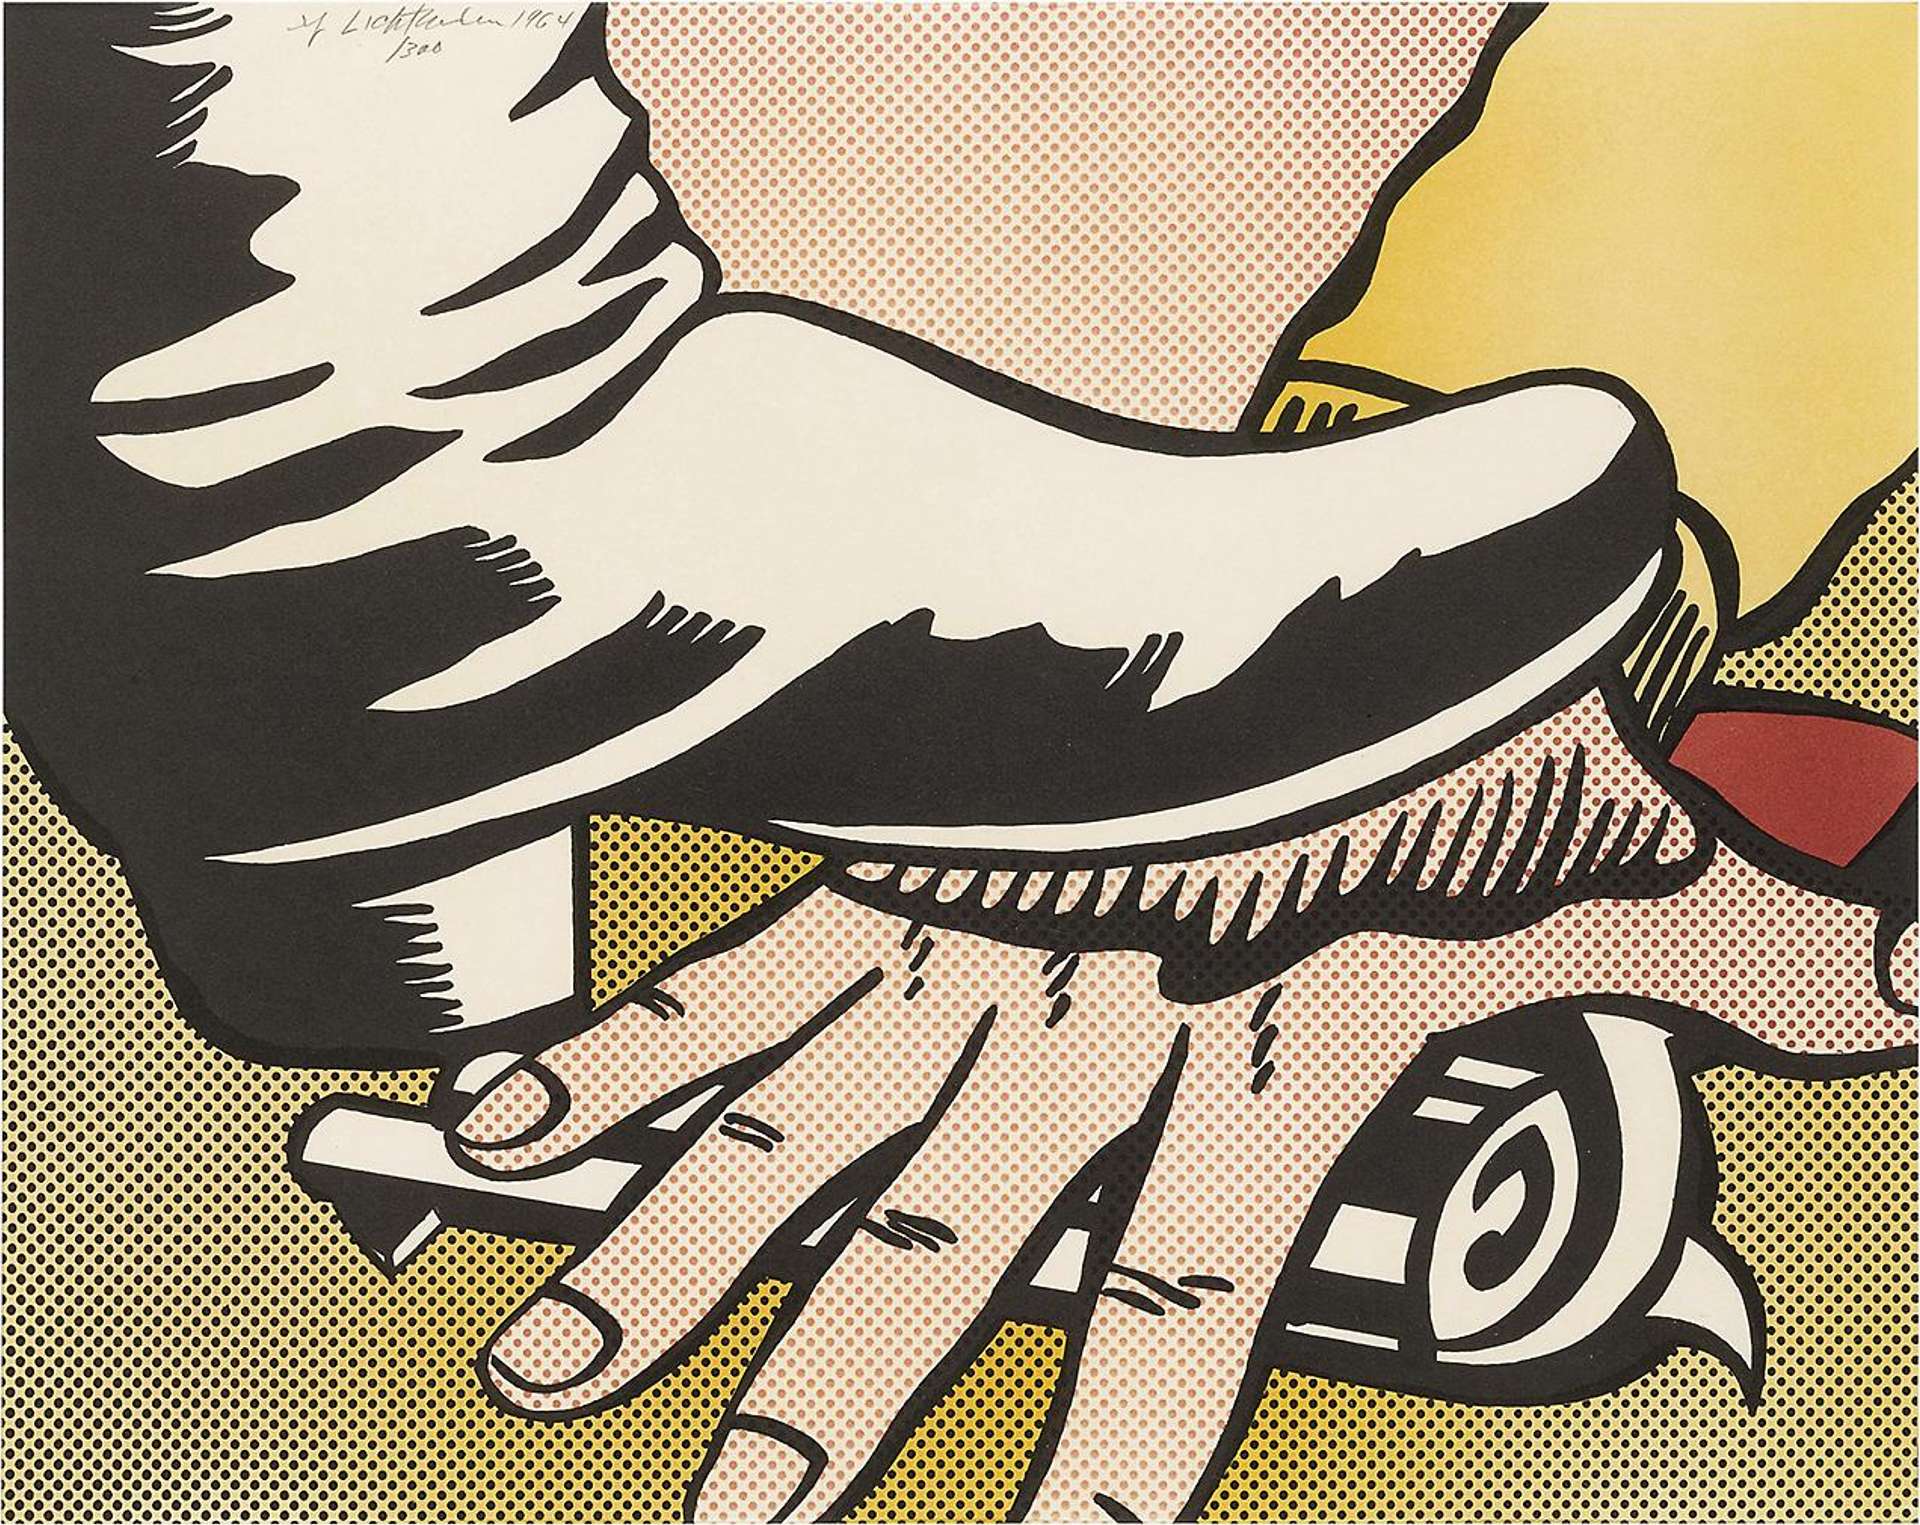 Foot And Hand - Signed Print by Roy Lichtenstein 1964 - MyArtBroker